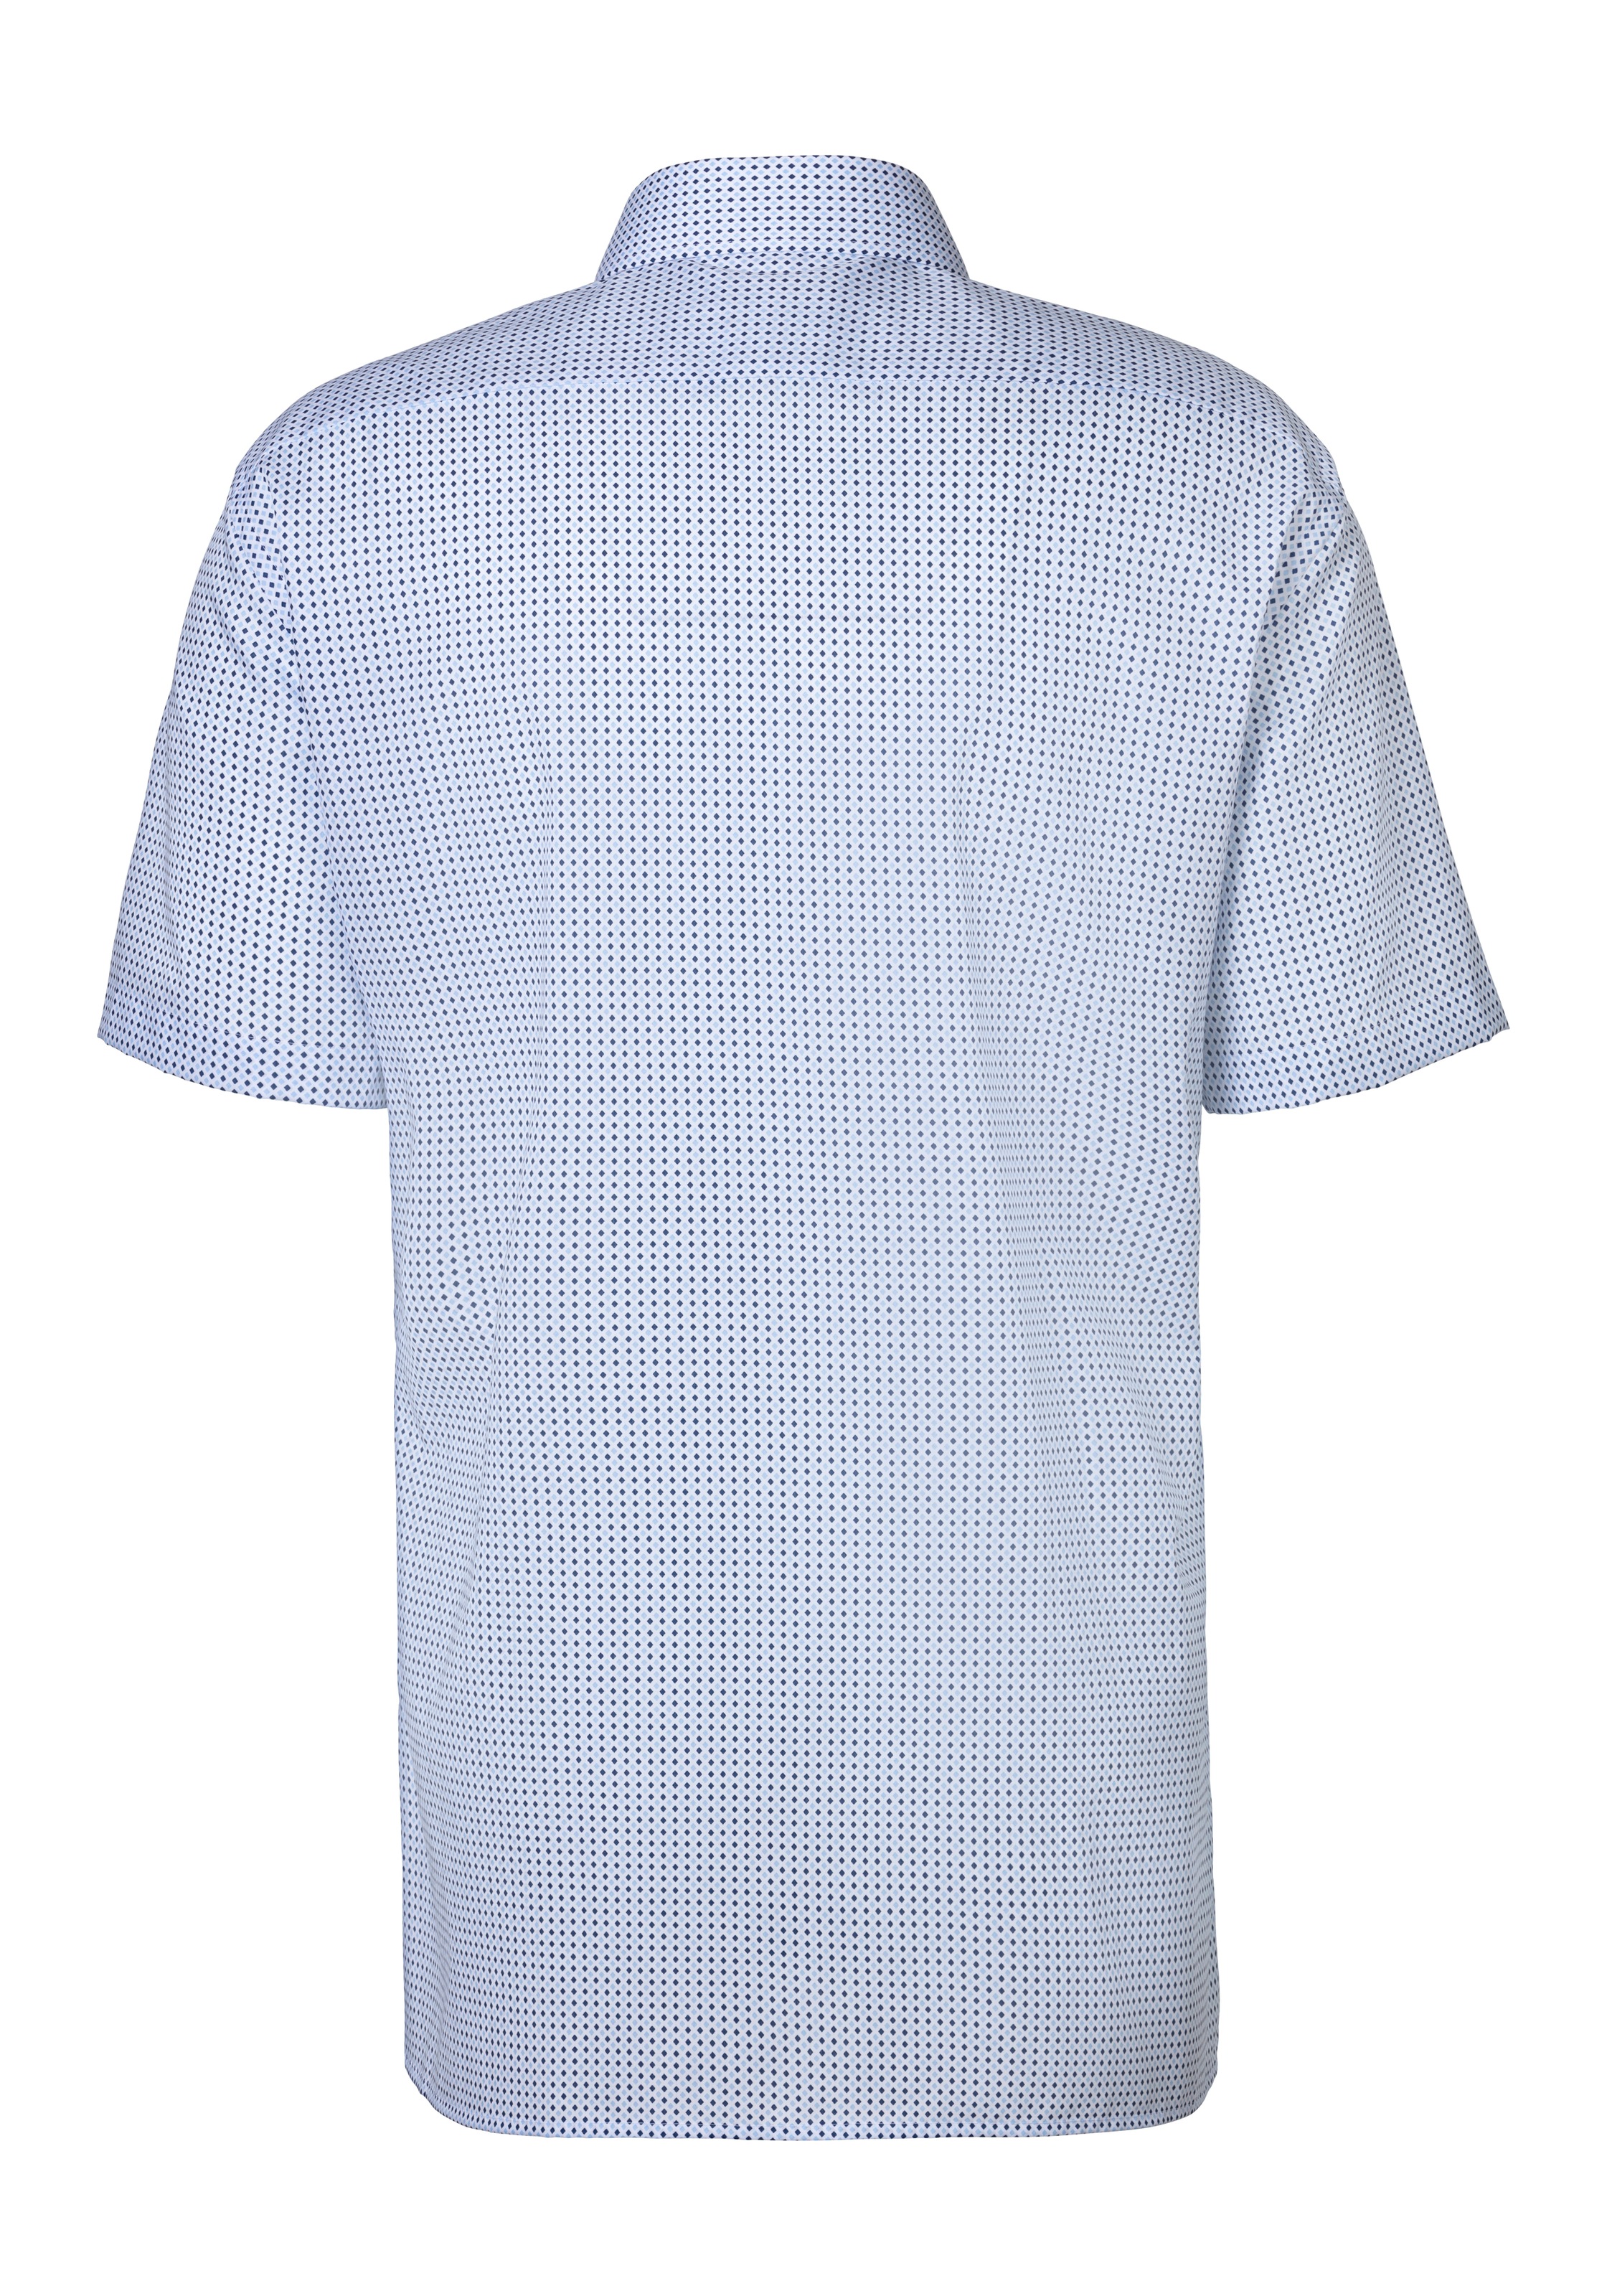 OLYMP Kurzarmhemd »Luxor«, mit modischem Muster